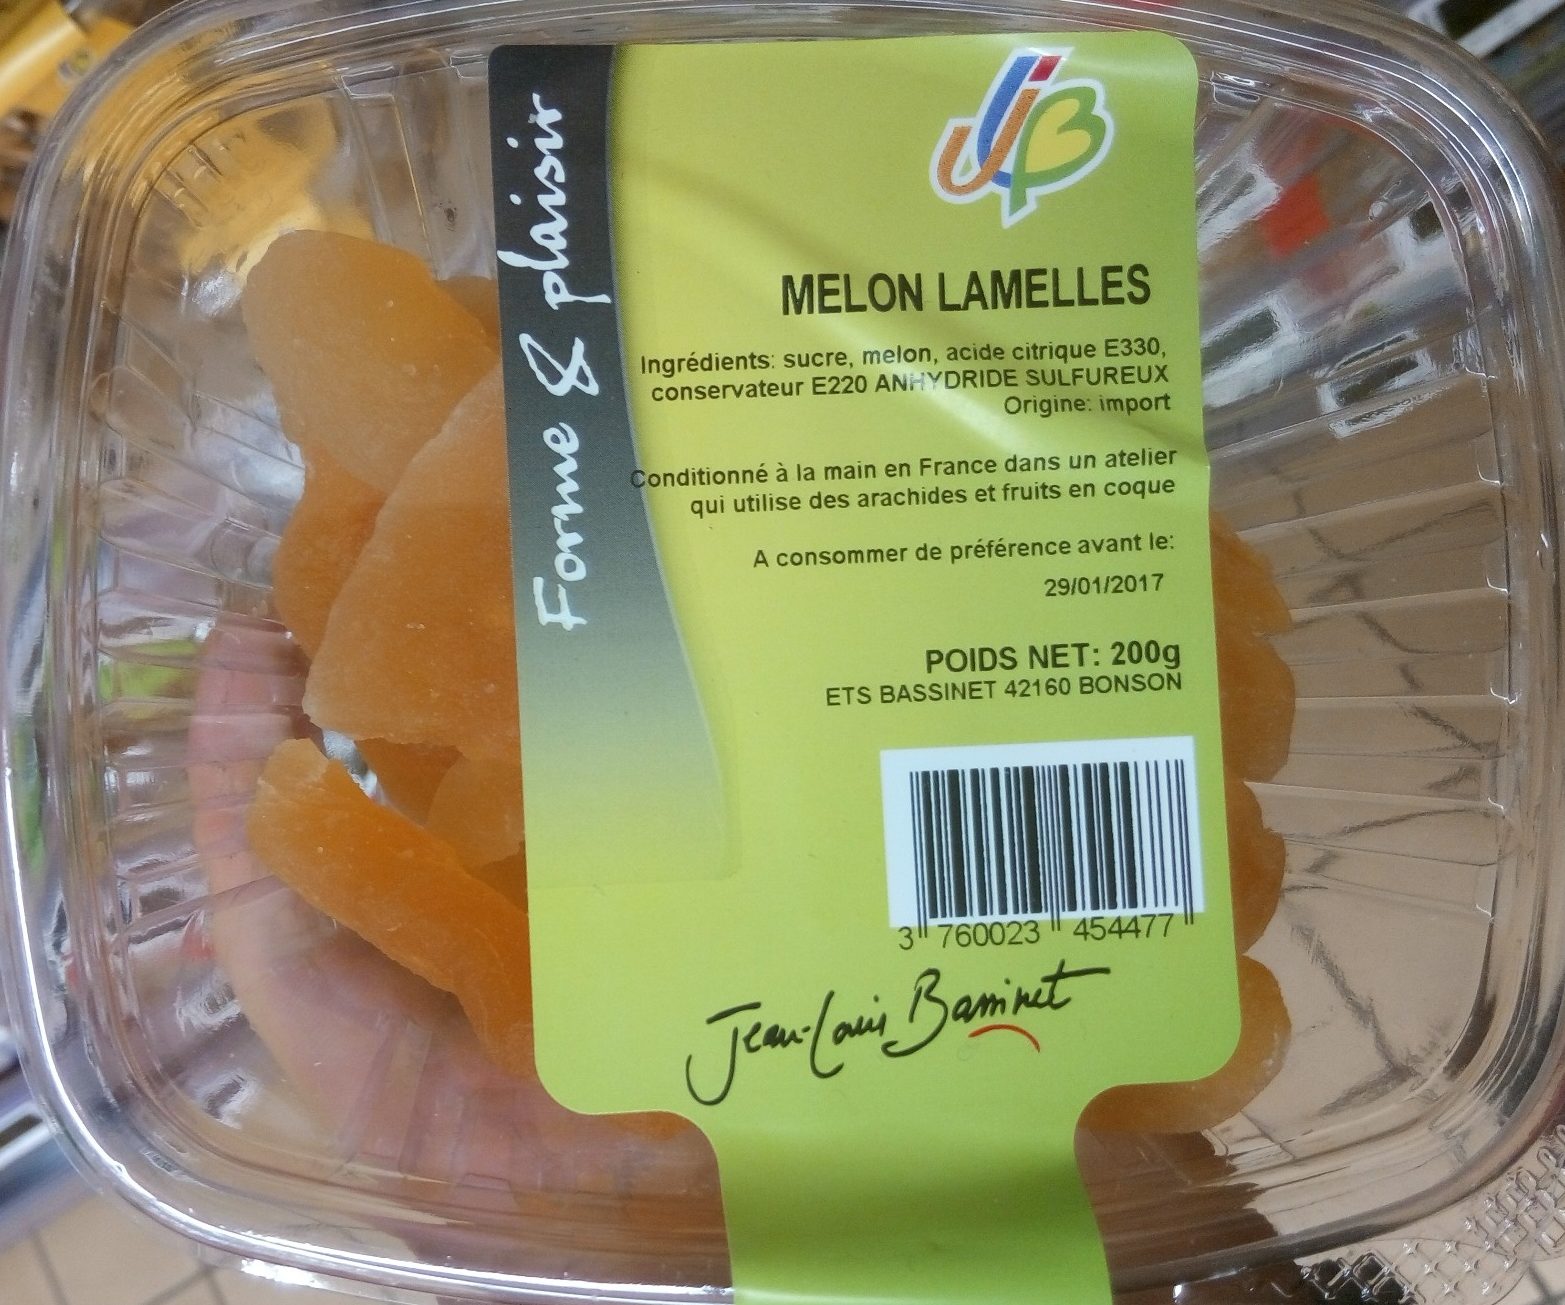 Melons lamelles - Product - fr